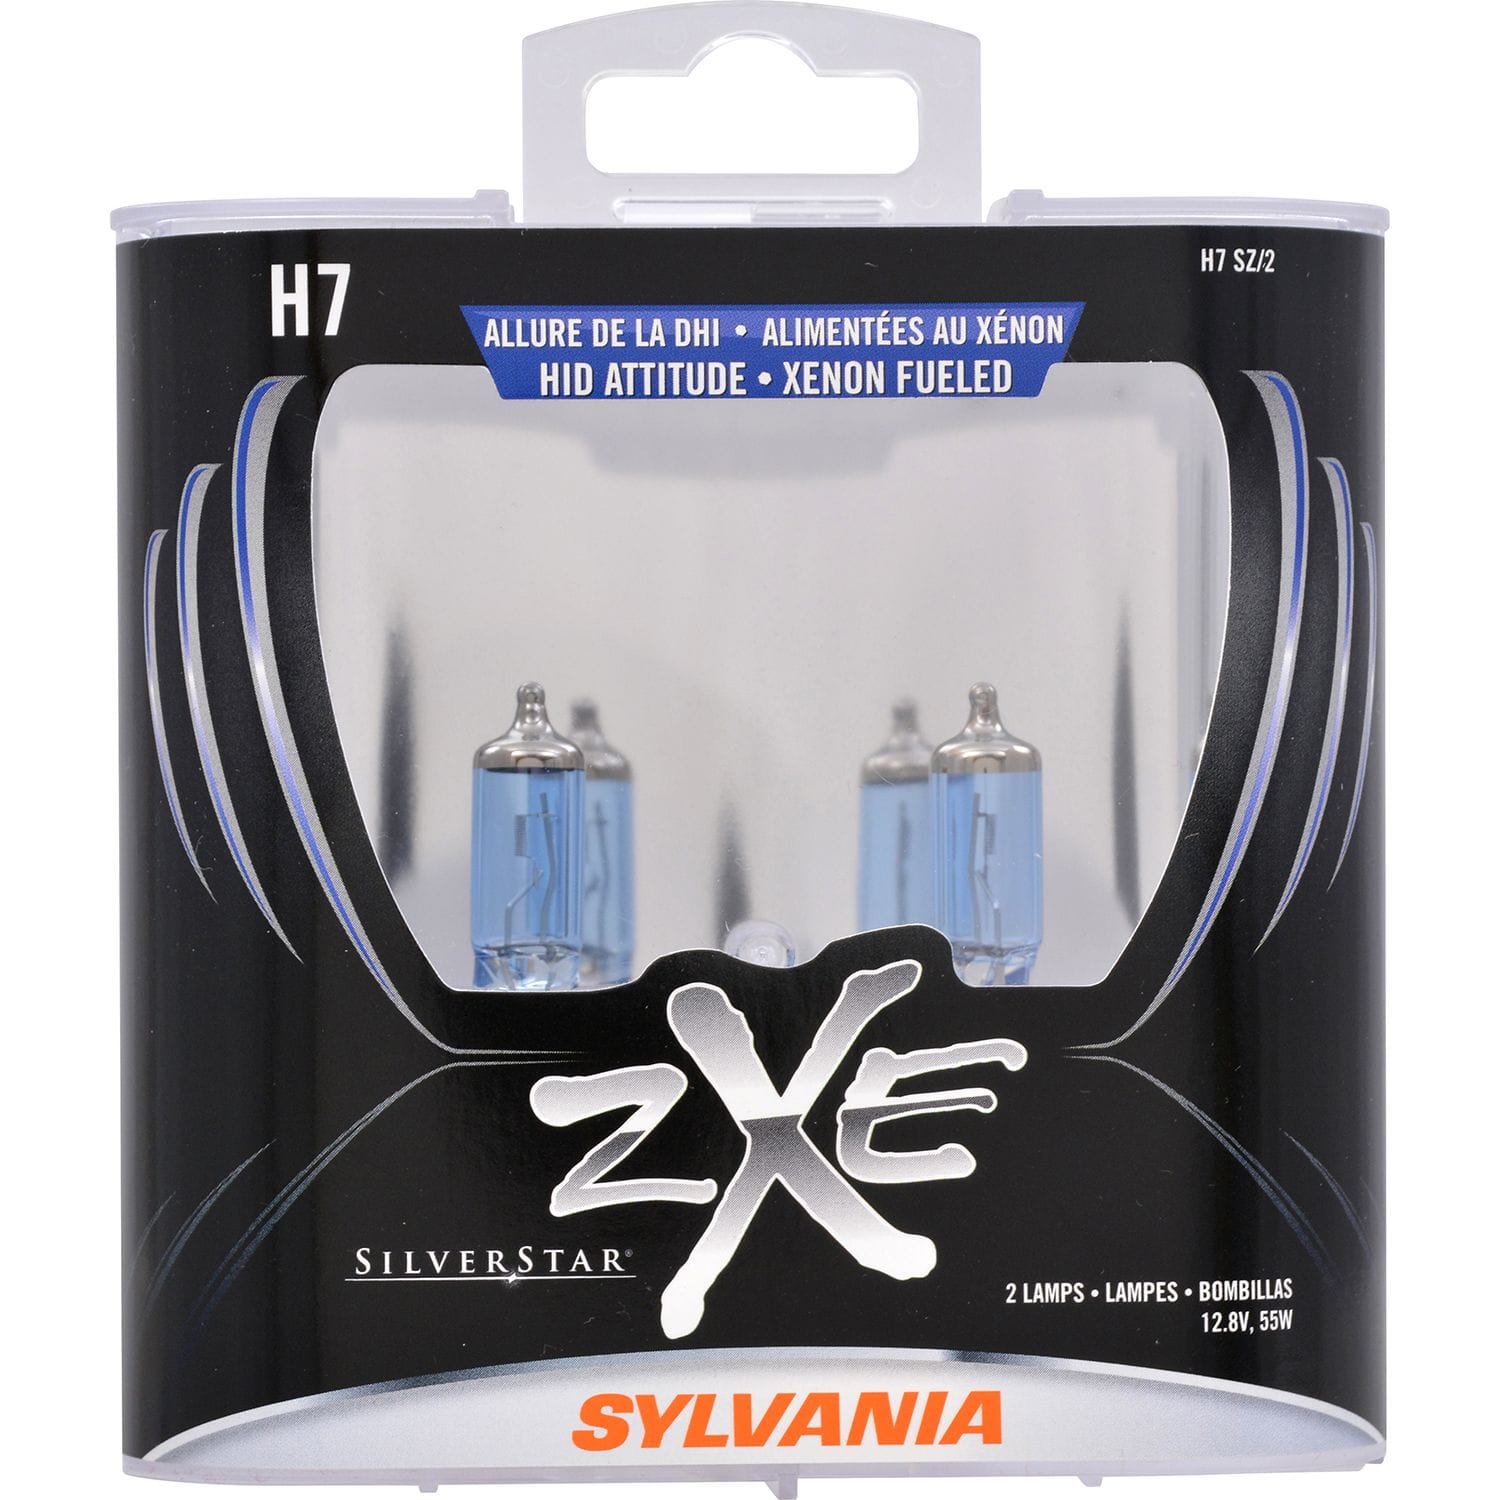 SYLVANIA H7 SilverStar zXe Gold Halogen Headlight Bulb, 2 Pack